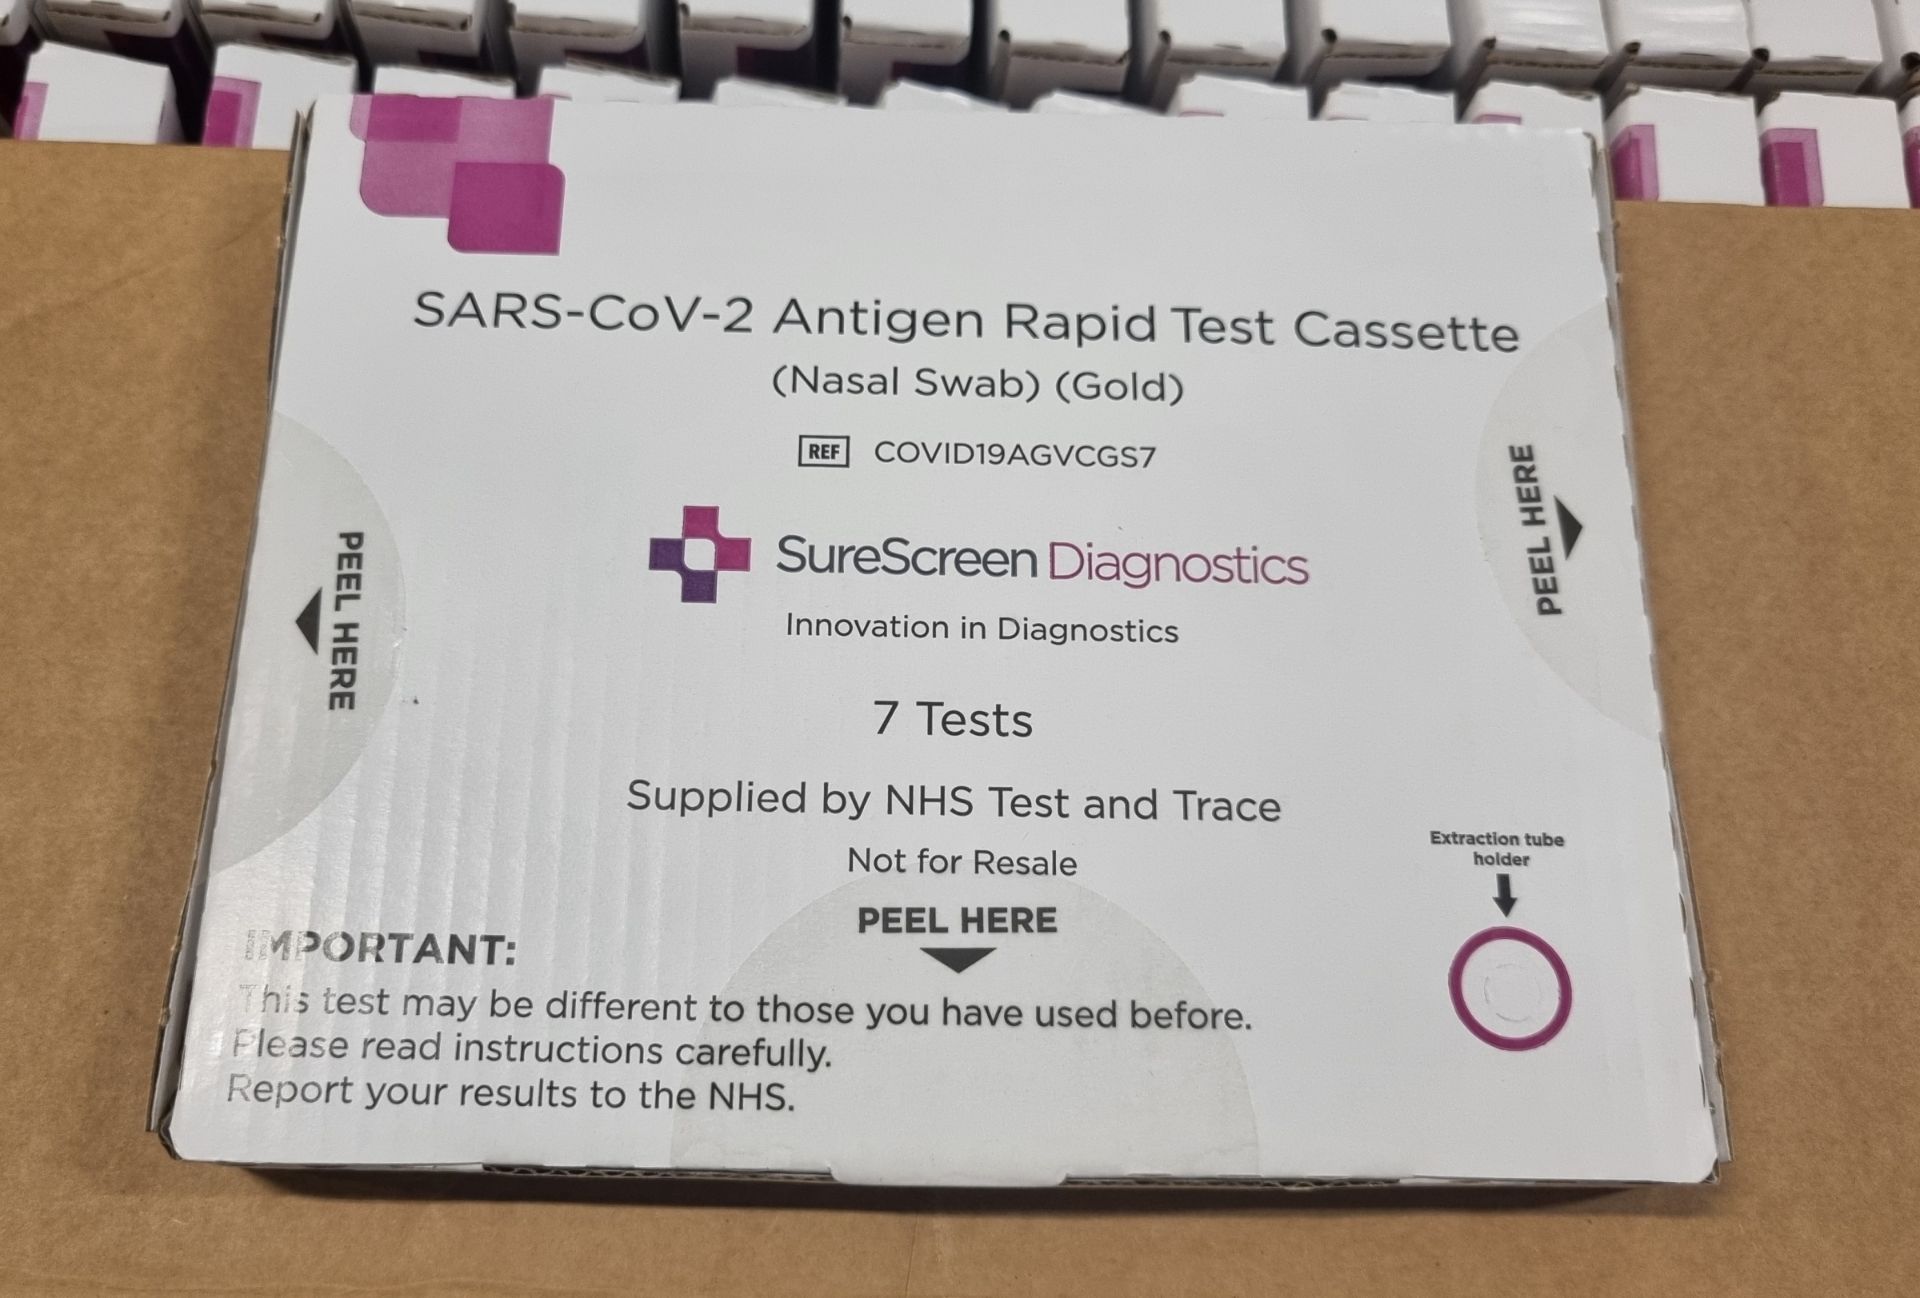 14x boxes of SureScreen Diagnostics SARS-CoV-2 antigen rapid test swabs - 392 tests/cartons per box - Image 4 of 4